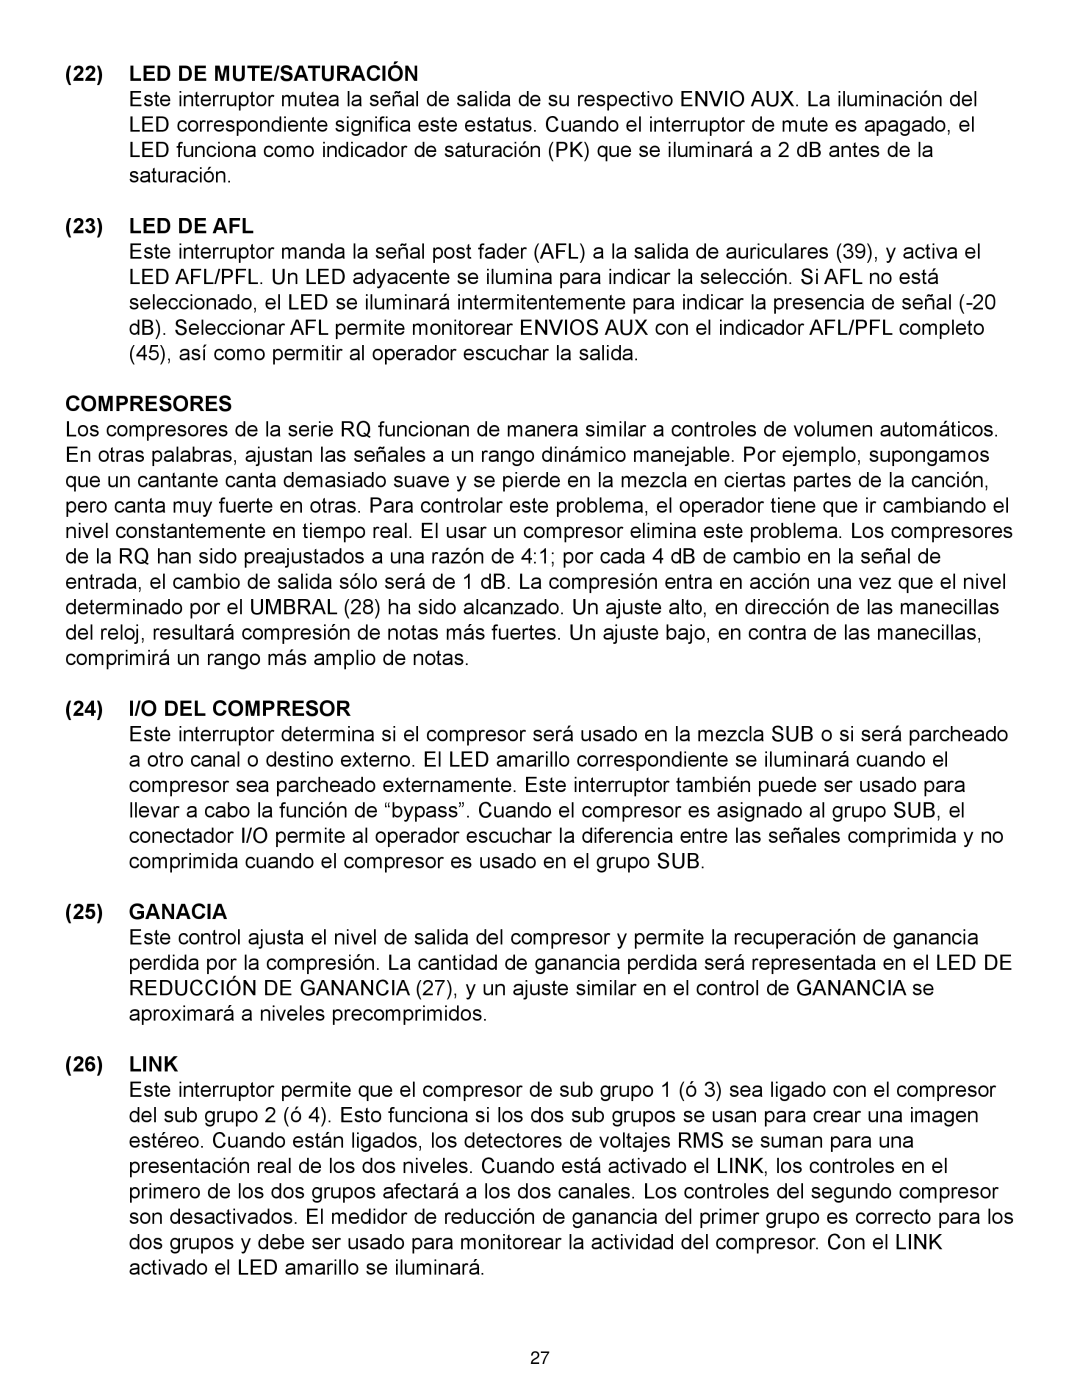 Peavey RQ 4300 Series manual Led De Mute/Saturación, Led De Afl, Compresores, 24 I/O DEL COMPRESOR, Ganacia, Link 